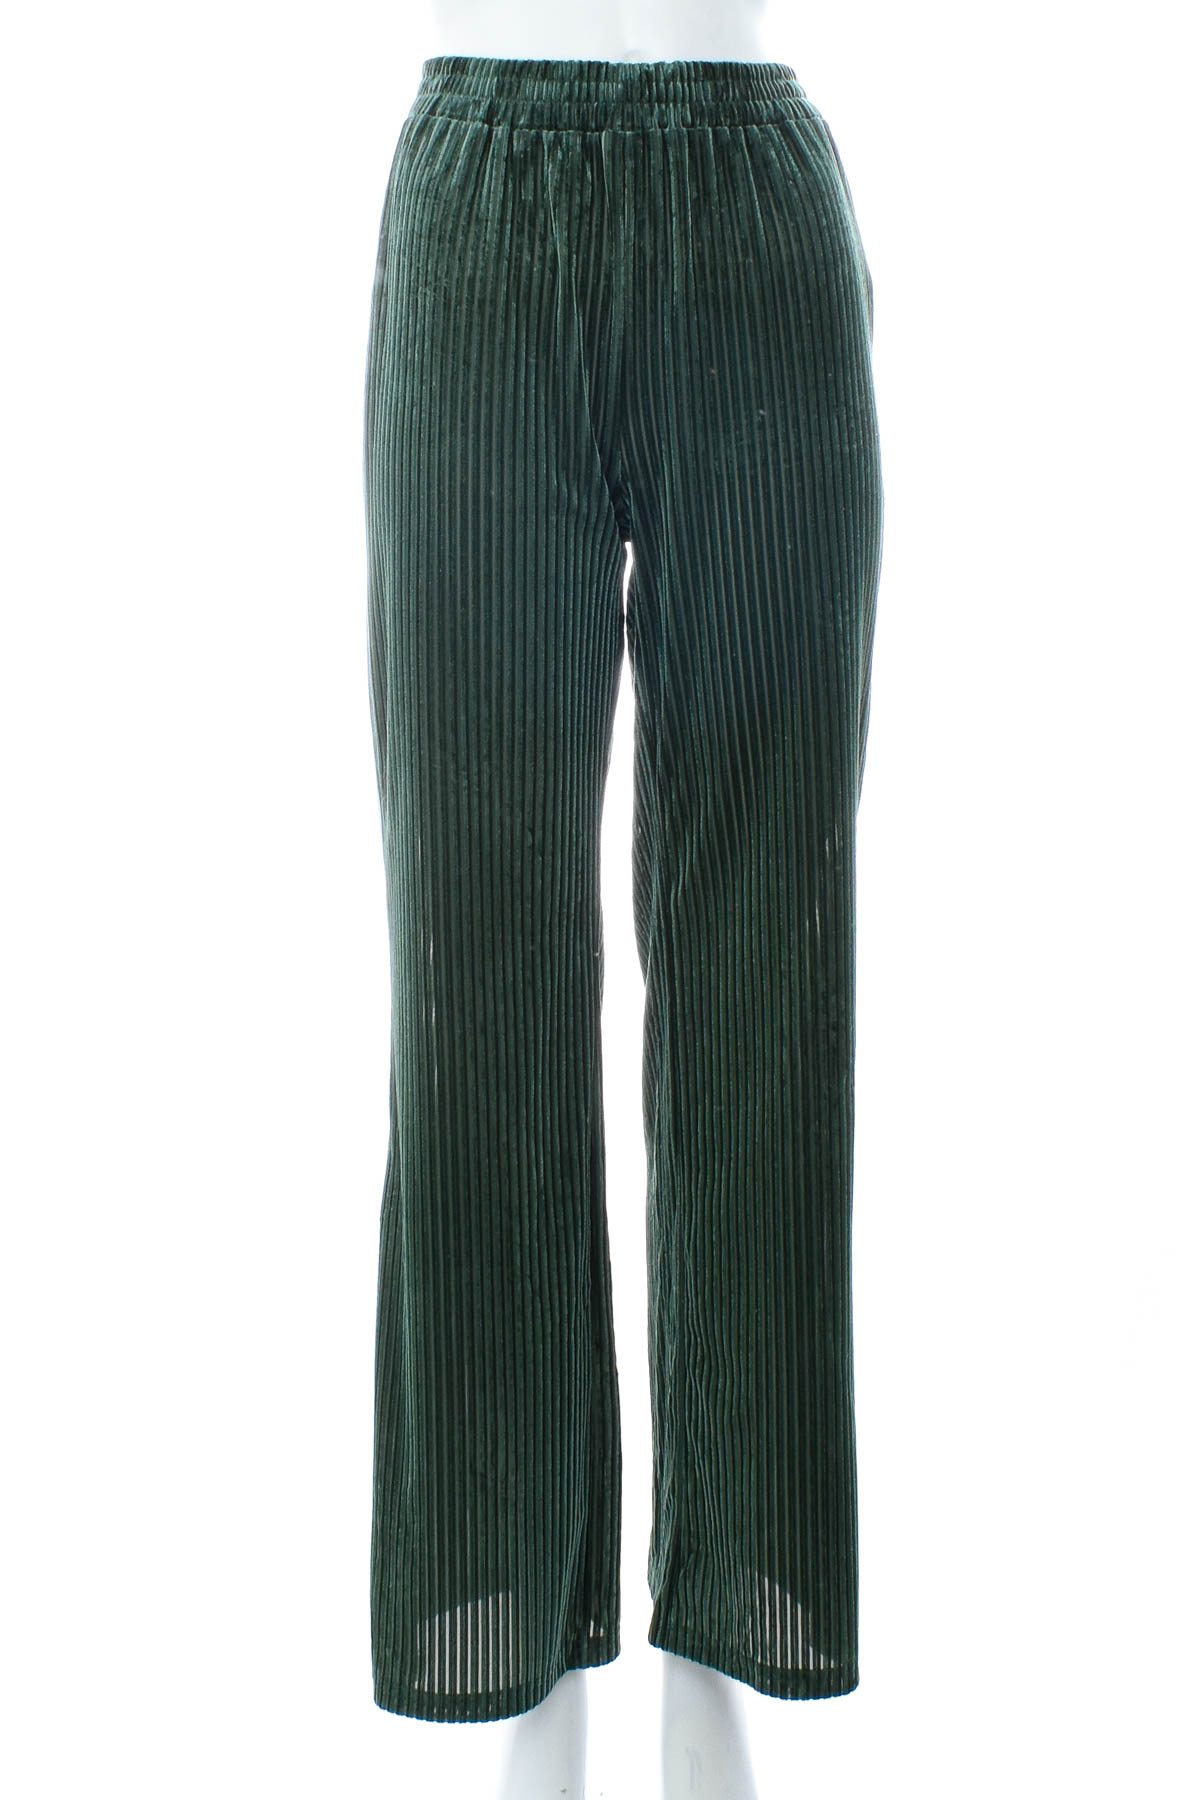 Women's trousers - SHEIN - 0